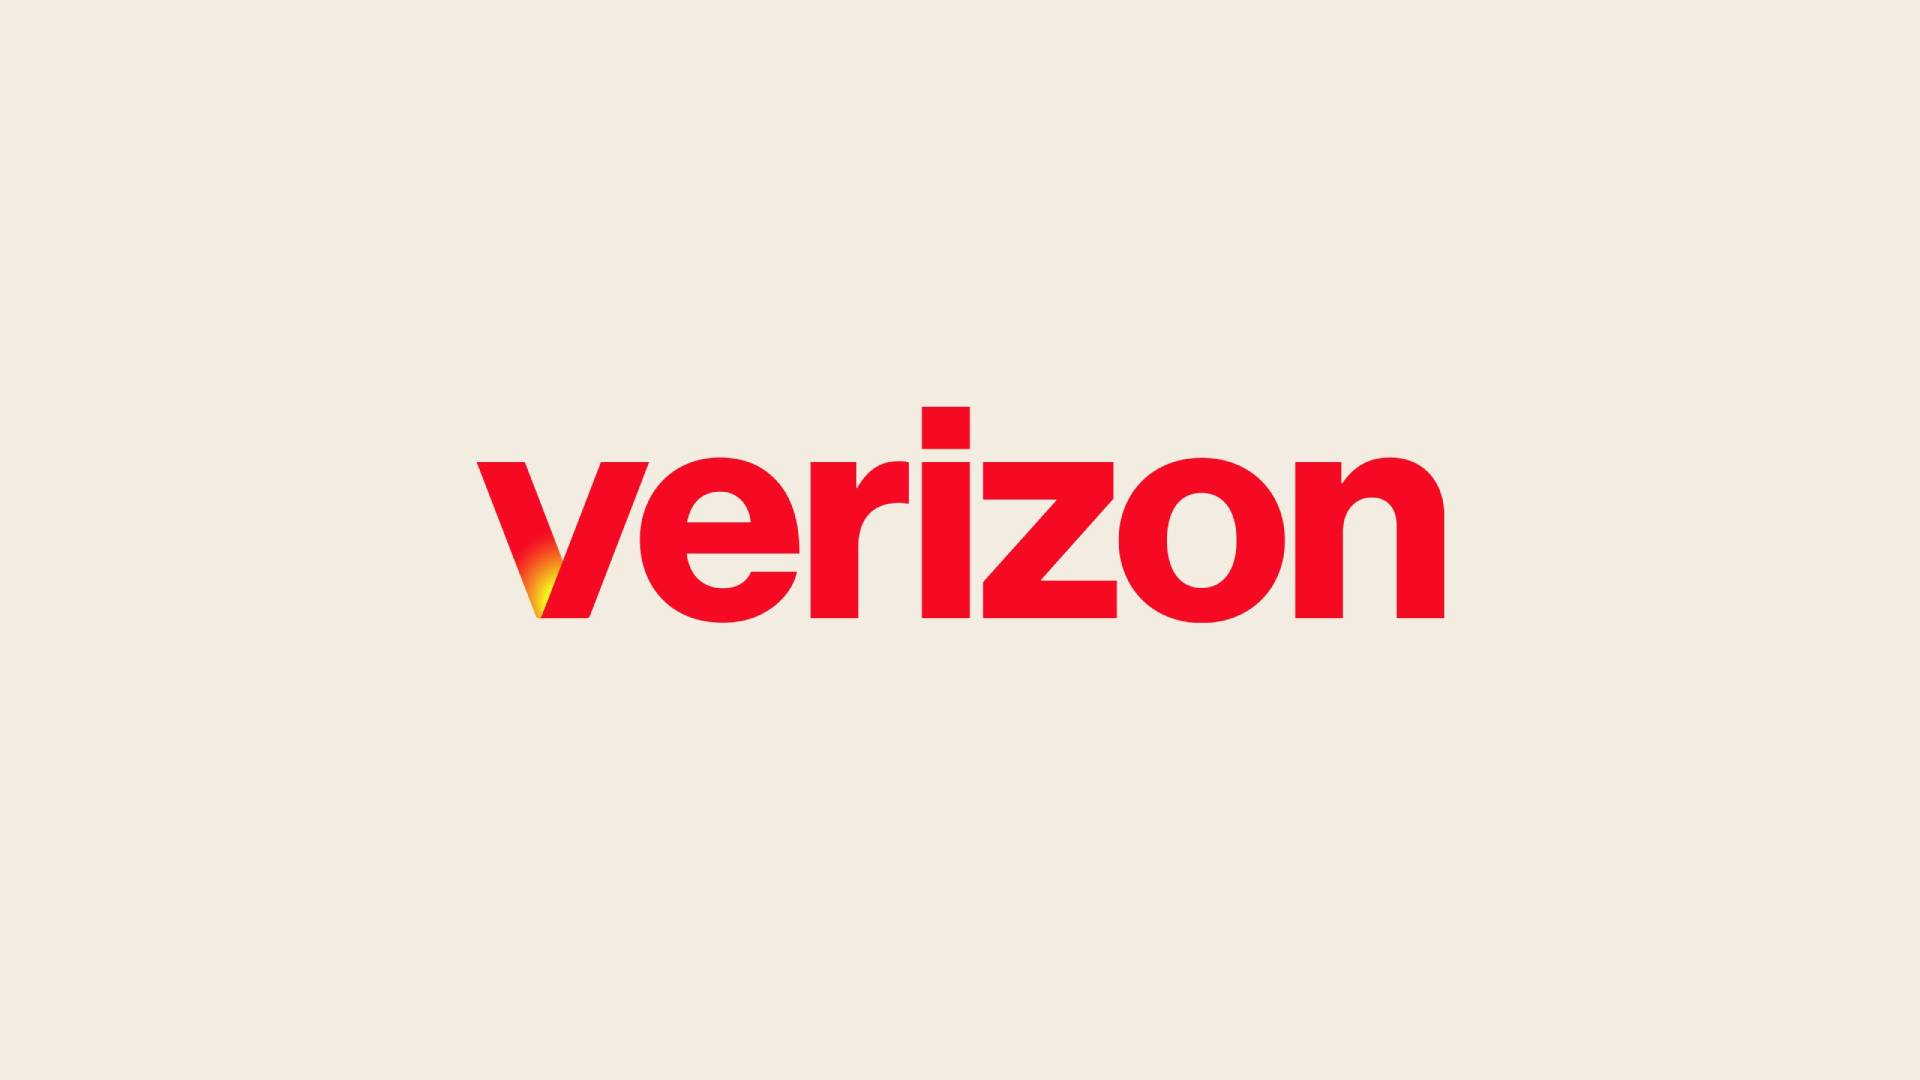 Verizon updated logo stock photo